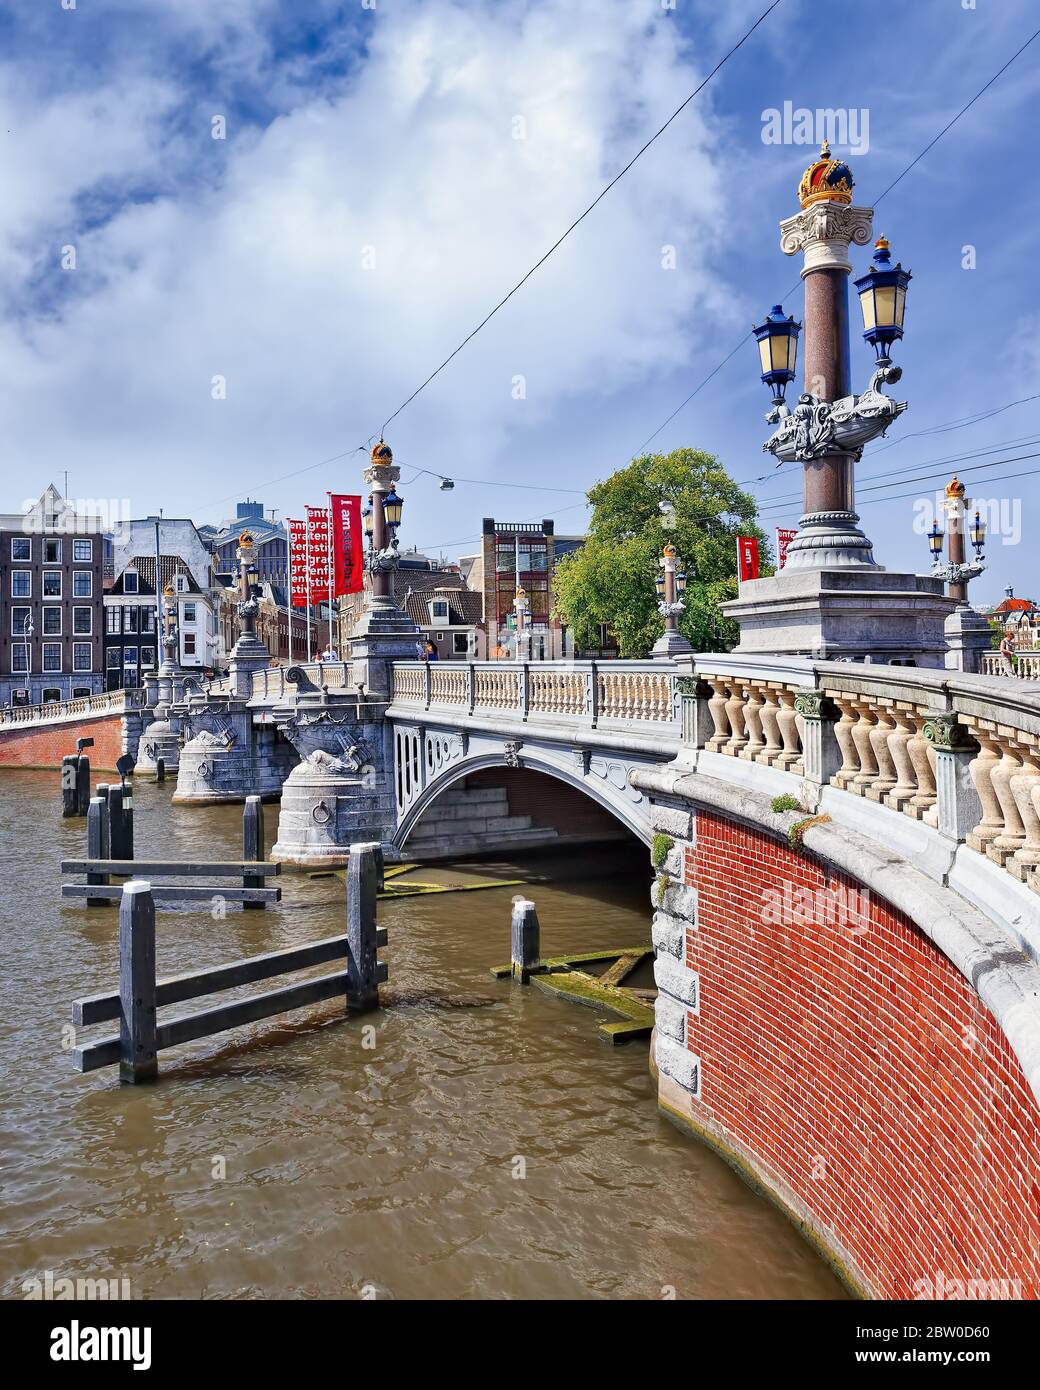 Der monumentale Blauwbrug überquert die Amstel gegen einen blauen Himmel. Es verbindet den Rembrandtplein mit dem Waterlooplein. Stockfoto